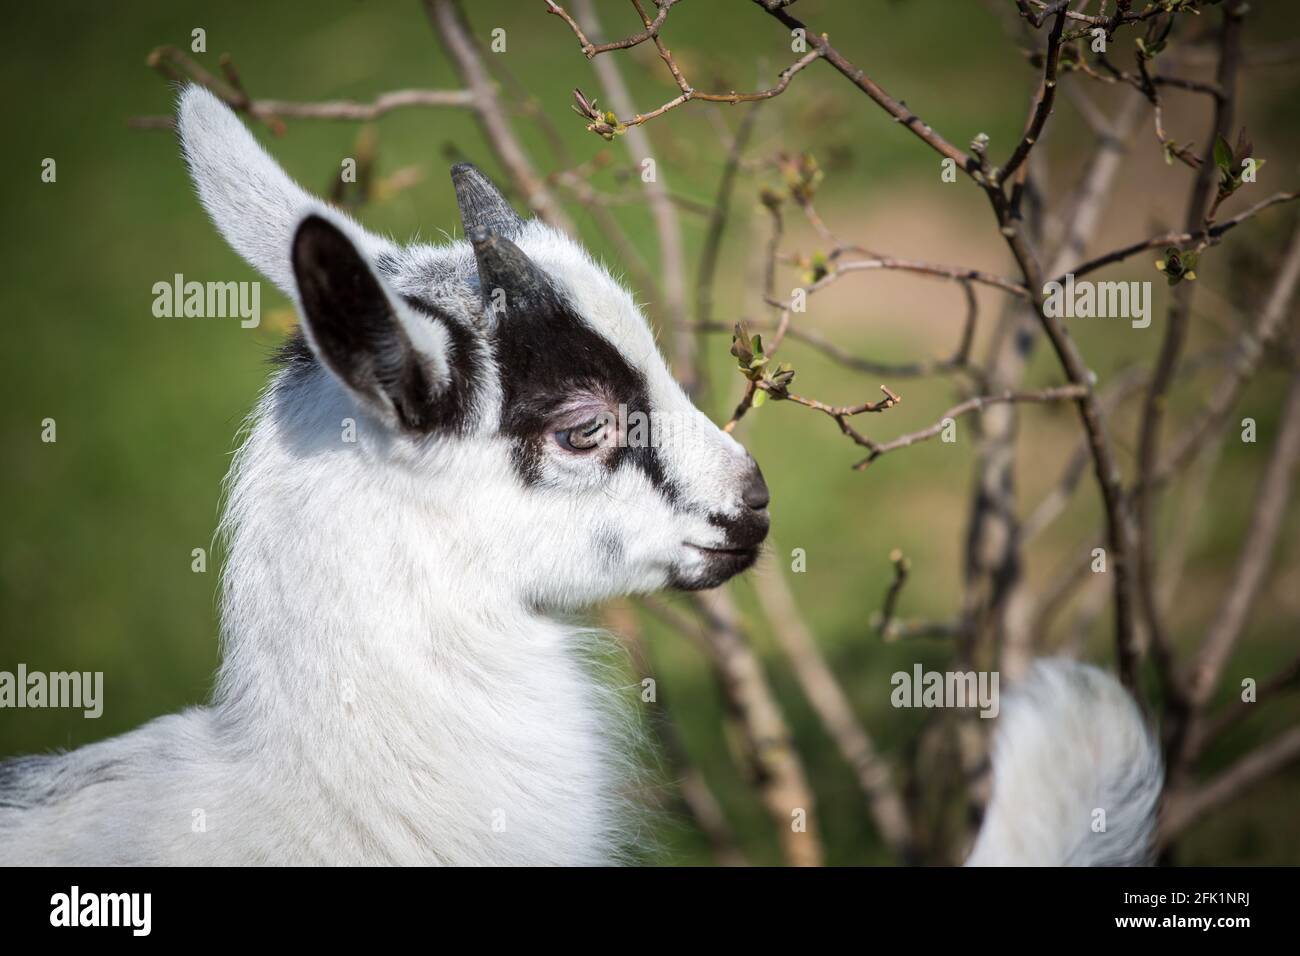 Ziegenbock der Rasse Pfauenziege, eine vom Aussterben bedrohte Ziegenrasse aus Österreich Stockfoto